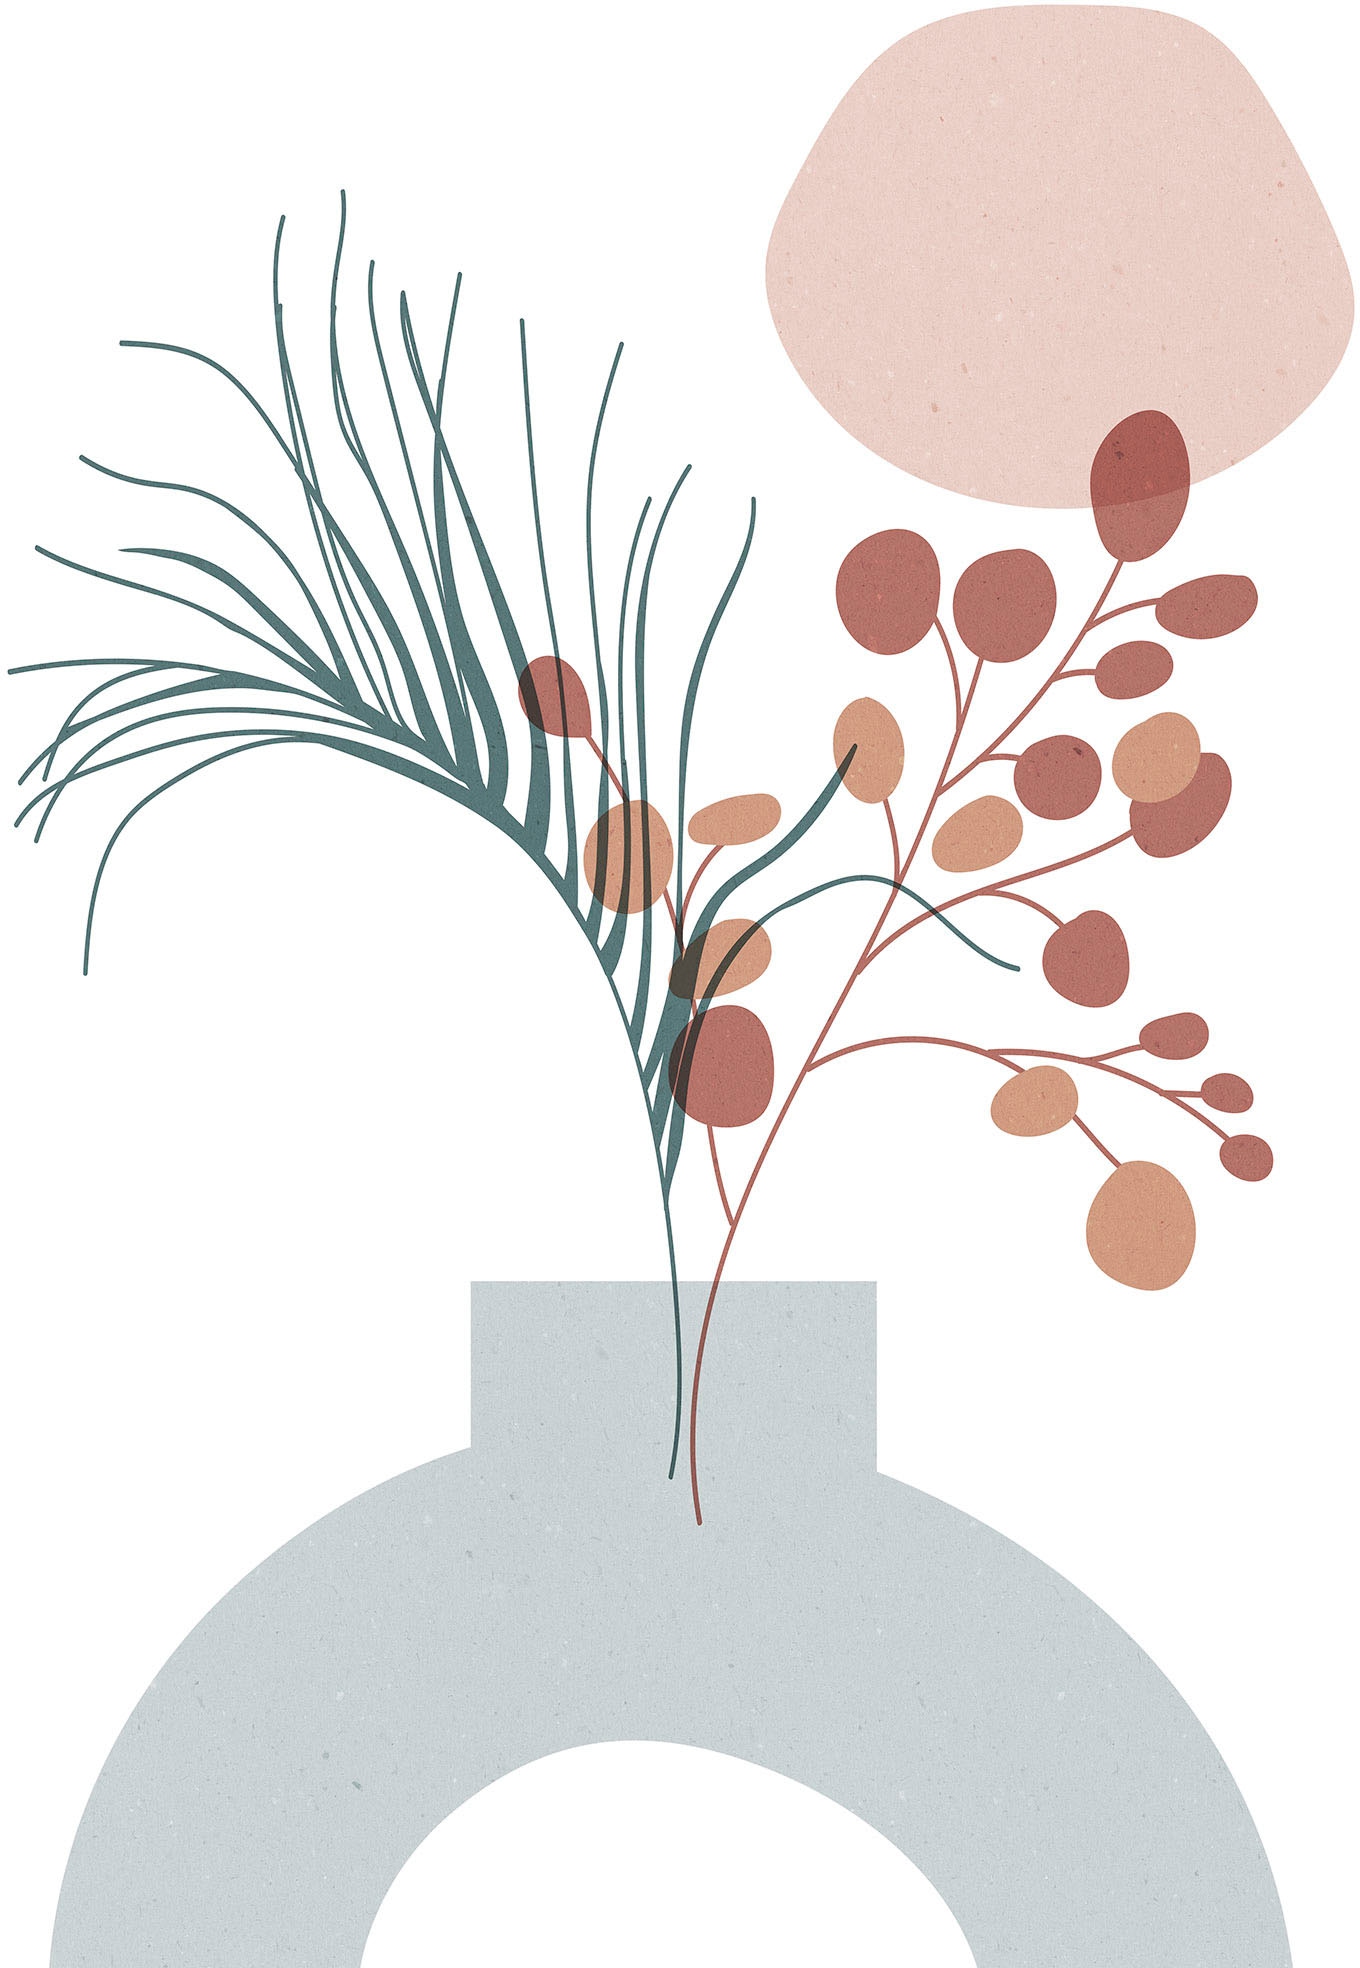 Komar Wandbild »Bohemian Vase«, (1 St.), Deutsches Premium-Poster Fotopapier mit seidenmatter Oberfläche und hoher Lichtbeständigkeit. Für fotorealistische Drucke mit gestochen scharfen Details und hervorragender Farbbrillanz.